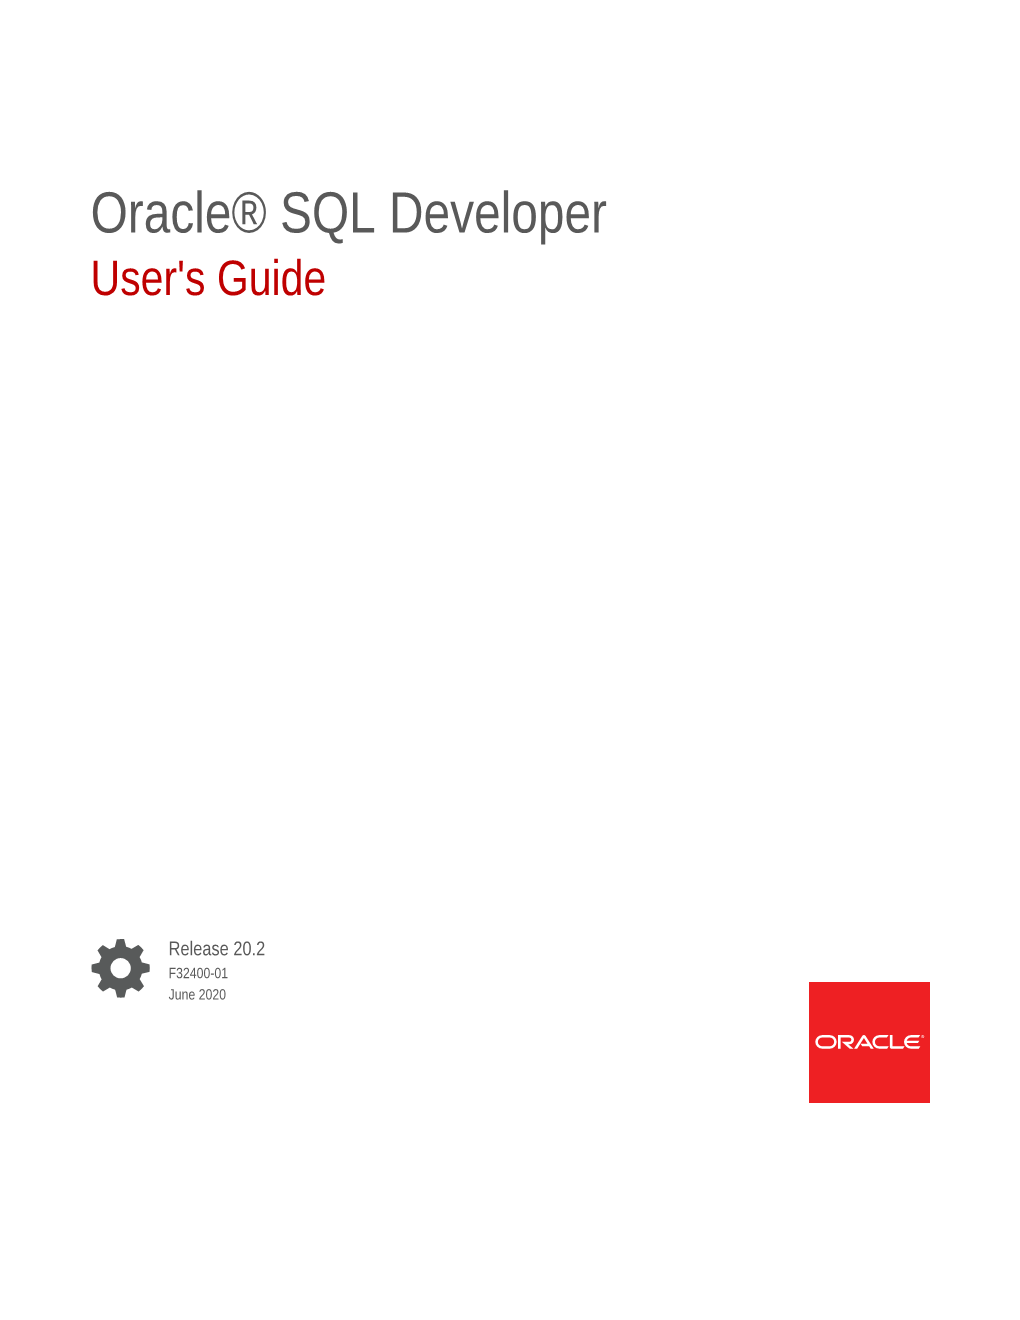 Oracle® SQL Developer User's Guide